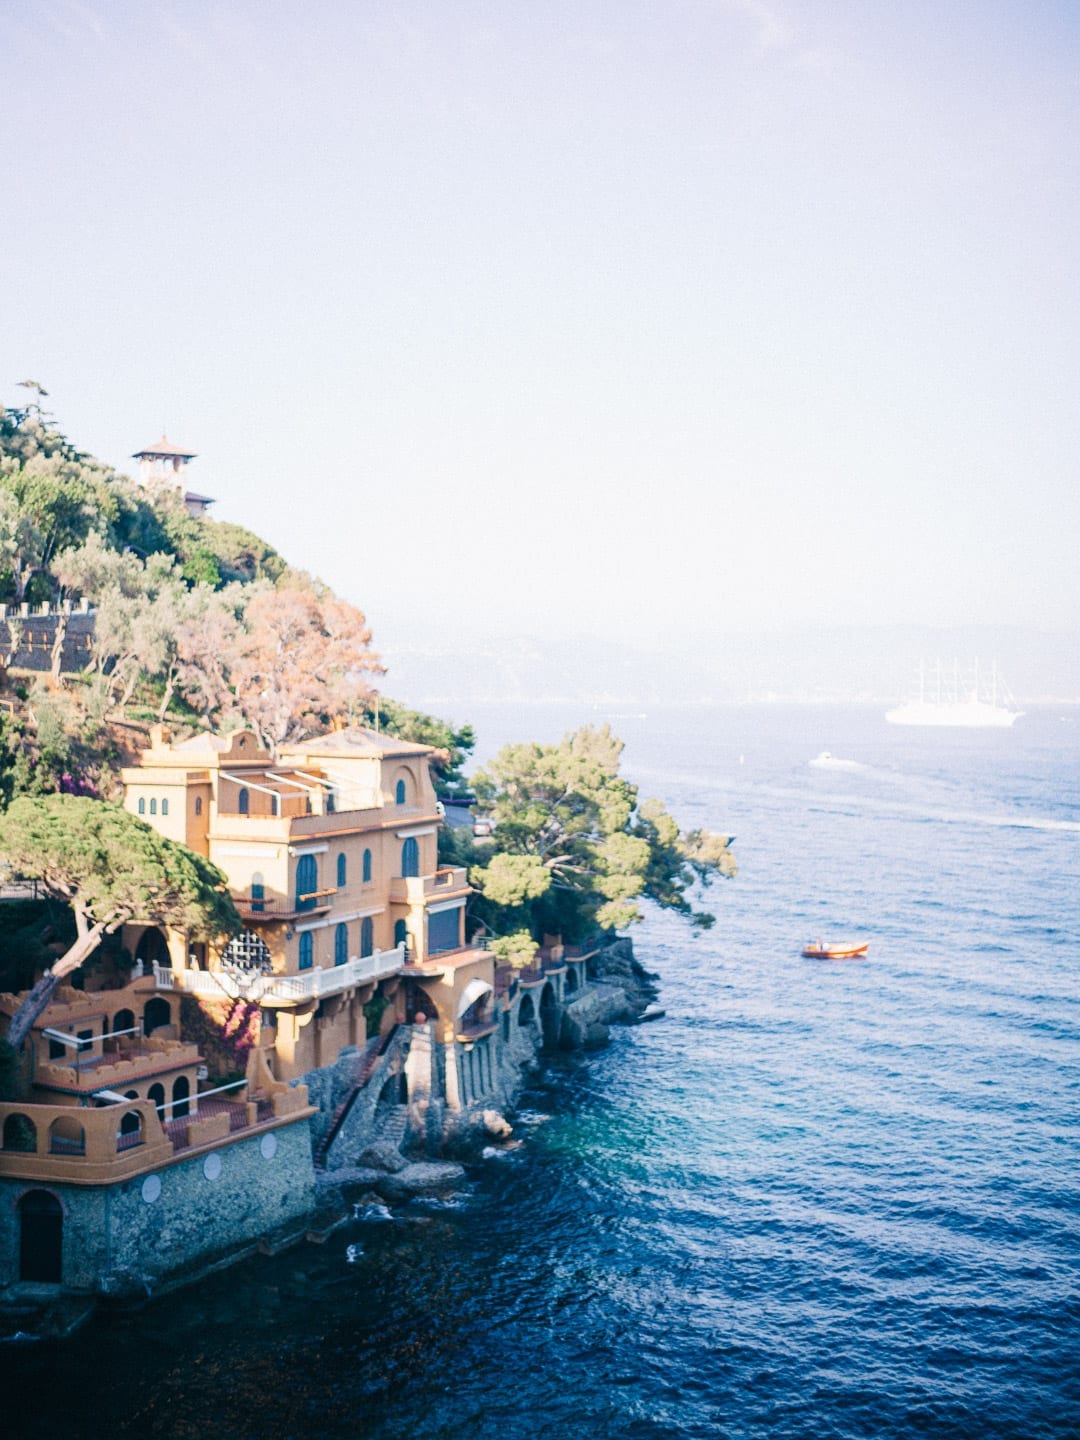 A perfect day at Splendido Mare in Portofino, Italy - Fathom